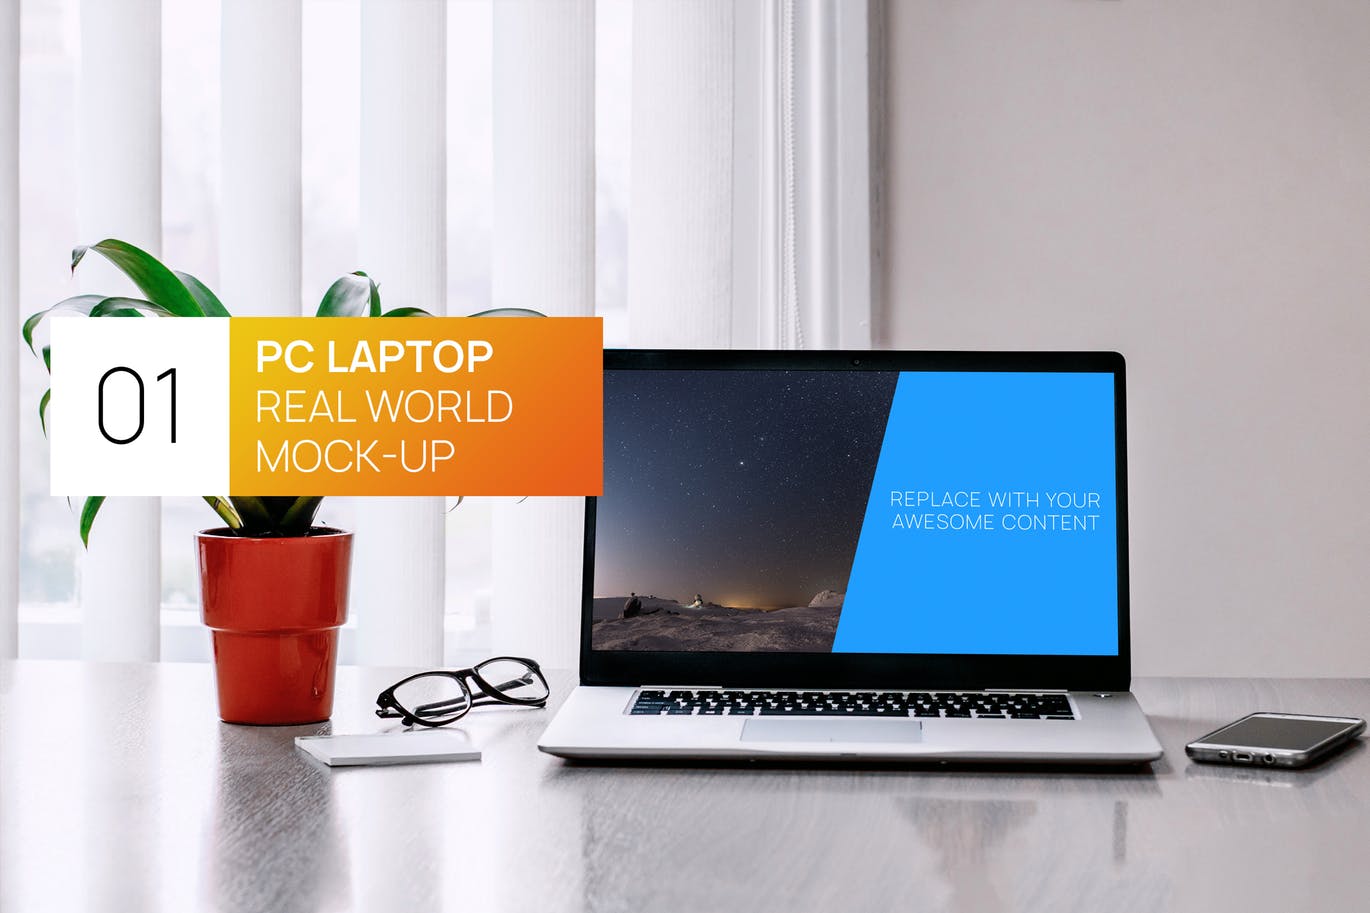 居家办公桌场景笔记本电脑屏幕演示第一素材精选样机 PC Laptop Real World Photo Mock-up插图